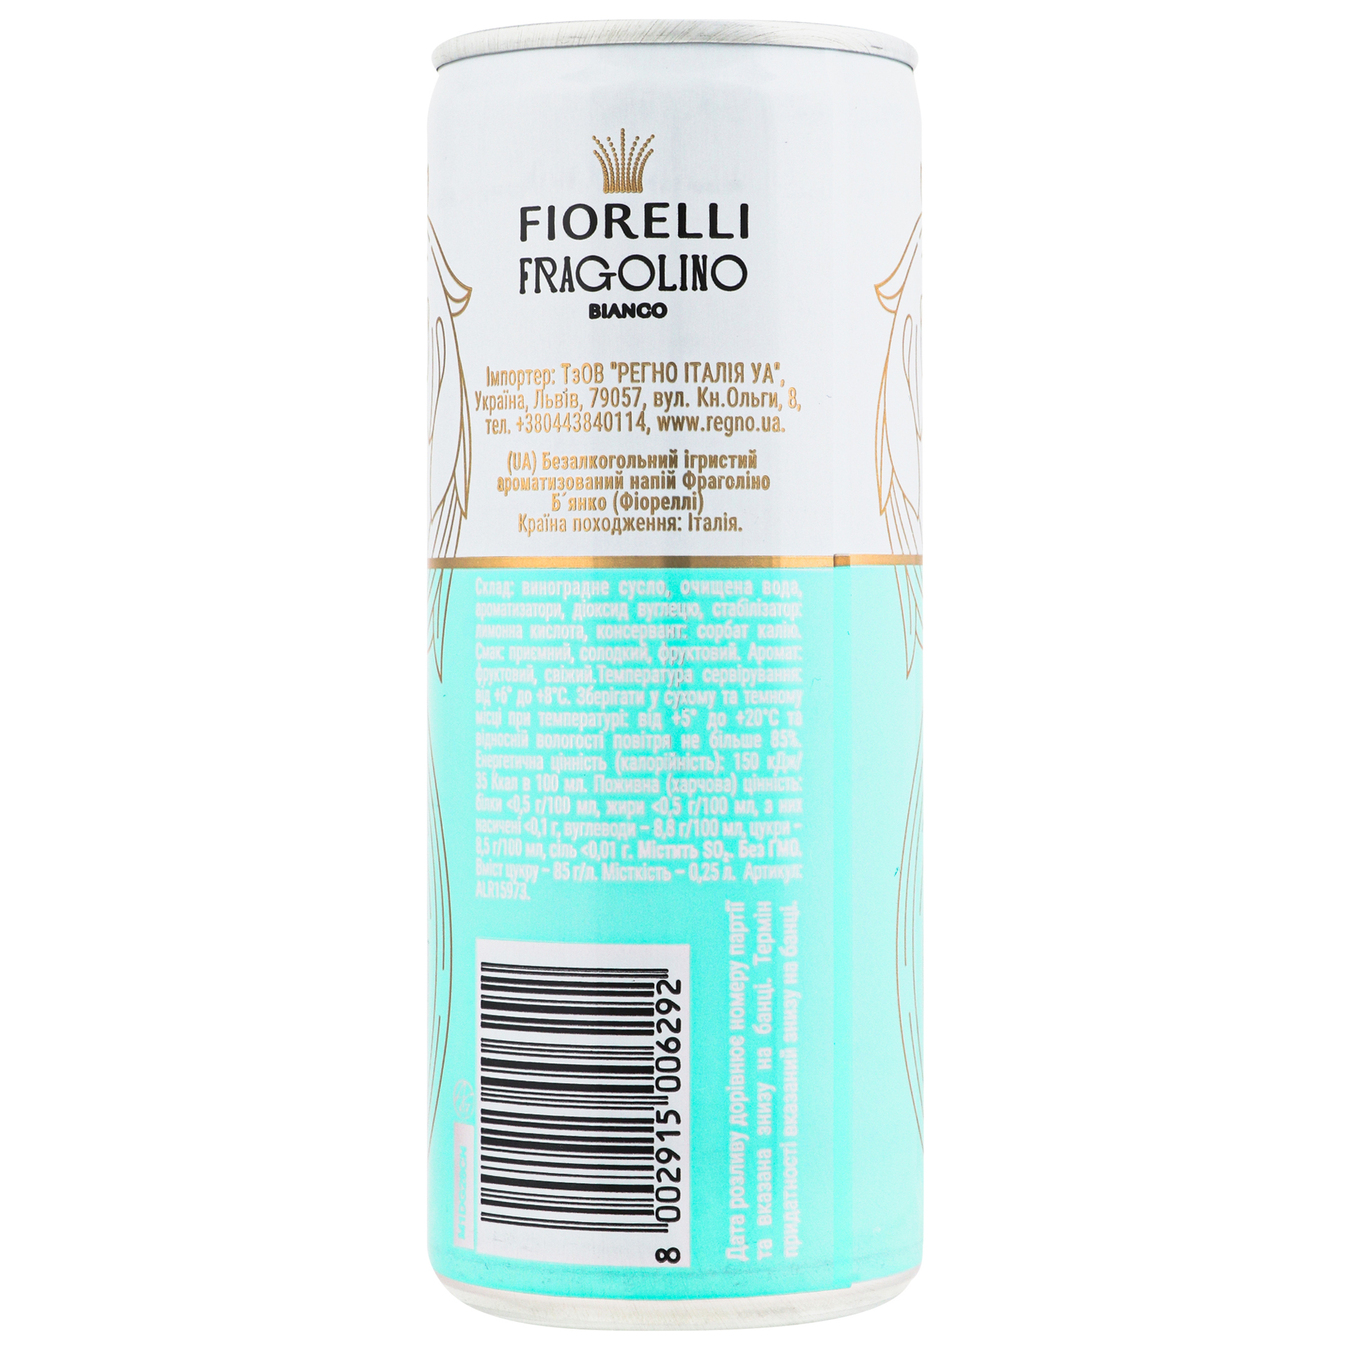 Sparkling non-alcoholic drink Fragolino Bianco Fiorelli 0% 0.25 l 2